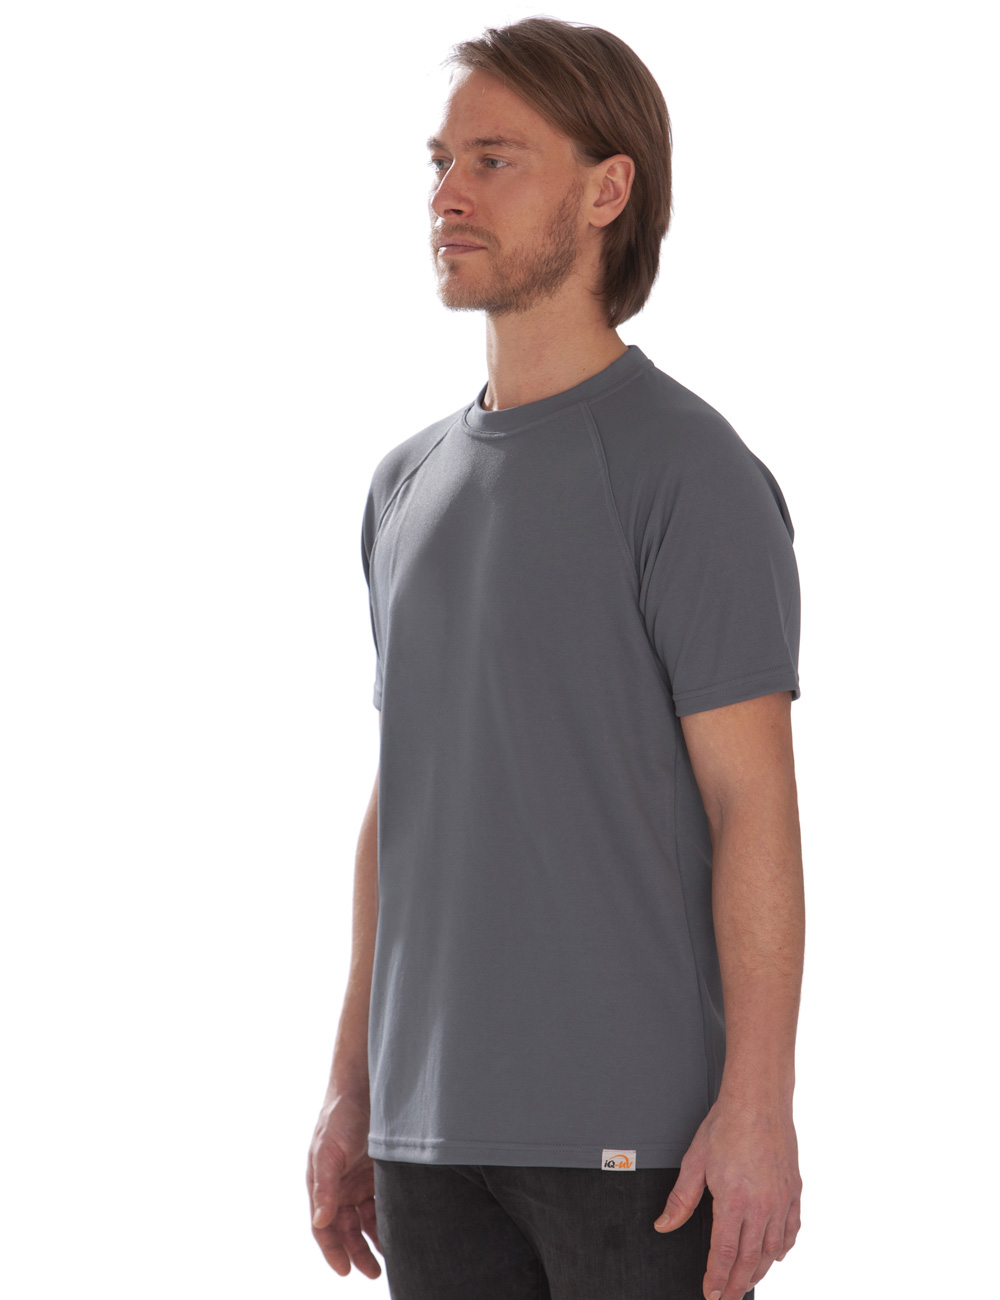 UV T-Shirt für Herren Outdoor Rundhals grau angezogen